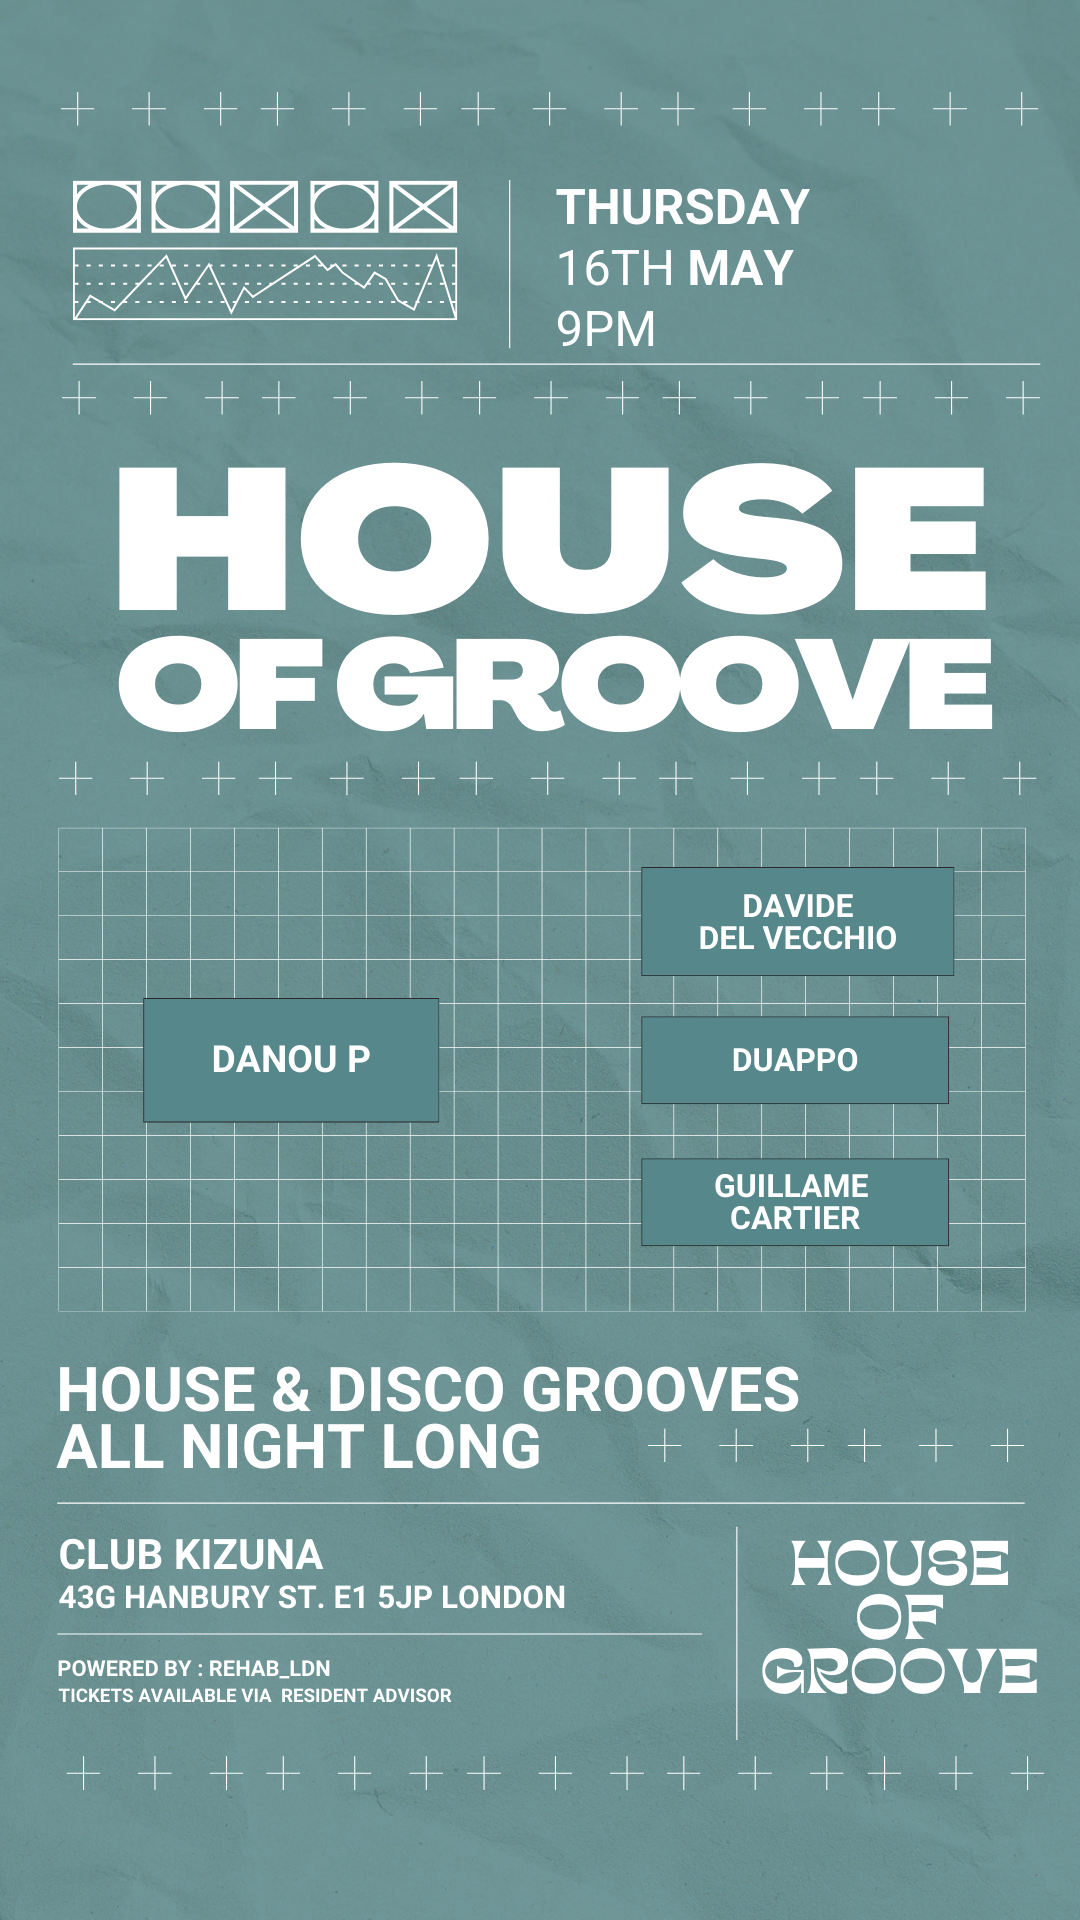 HOUSE OF GROOVE - Davide Del Vecchio Invites Danou P - フライヤー表